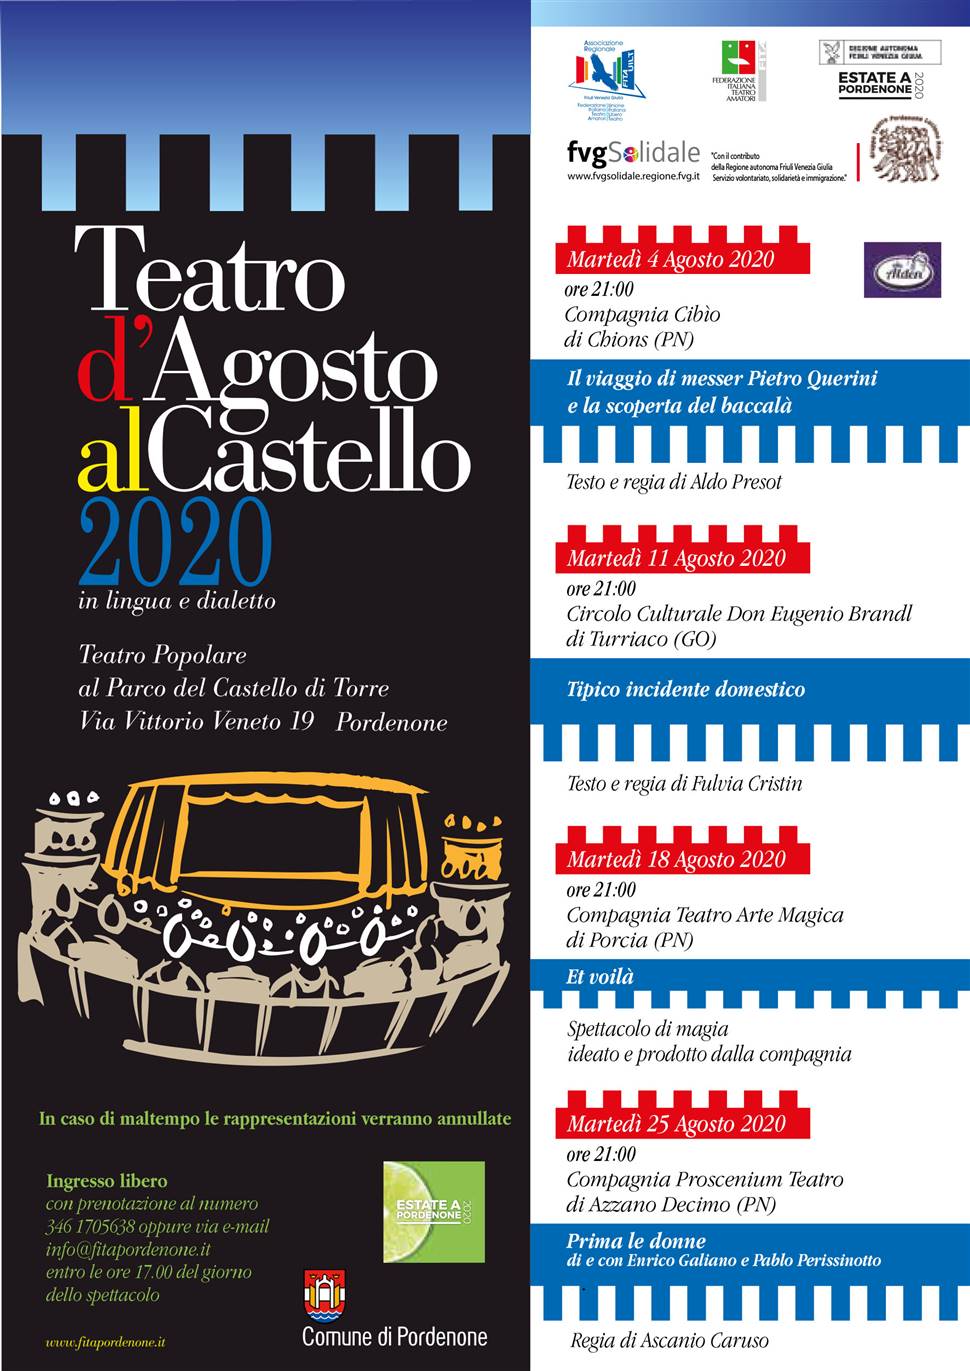 TEATRO D'AGOSTO AL CASTELLO 2020  Teatro popolare al parco del Castello in lingua e dialetto  